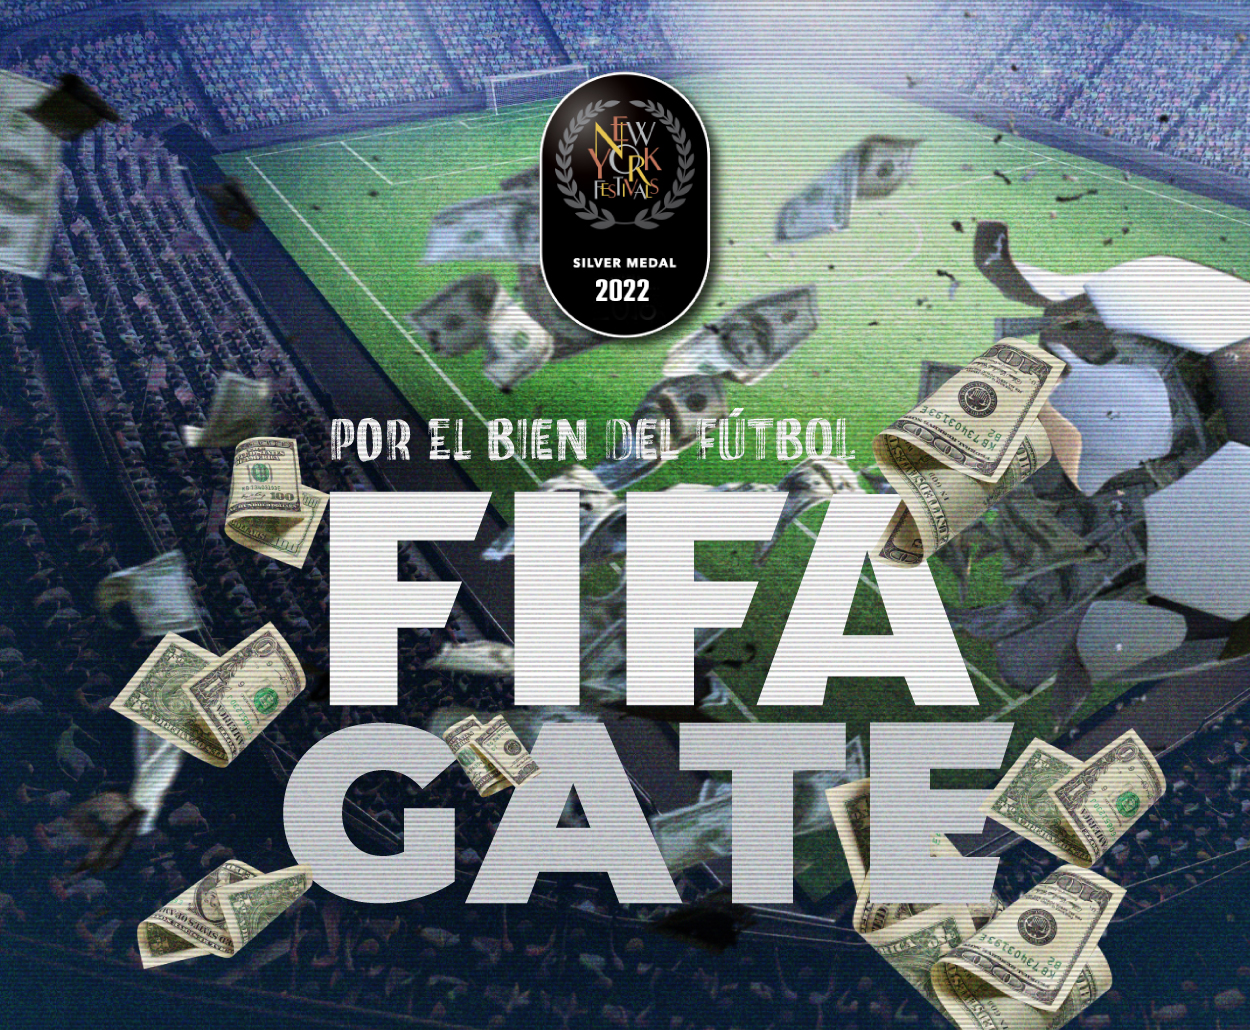 “FIFAGate, por el Bien del Fútbol”, la coproducción del Canal 14 con Radio y Televisión Argentina, obtuvo el premio de plata en el New York Festivals TV & Film Awards